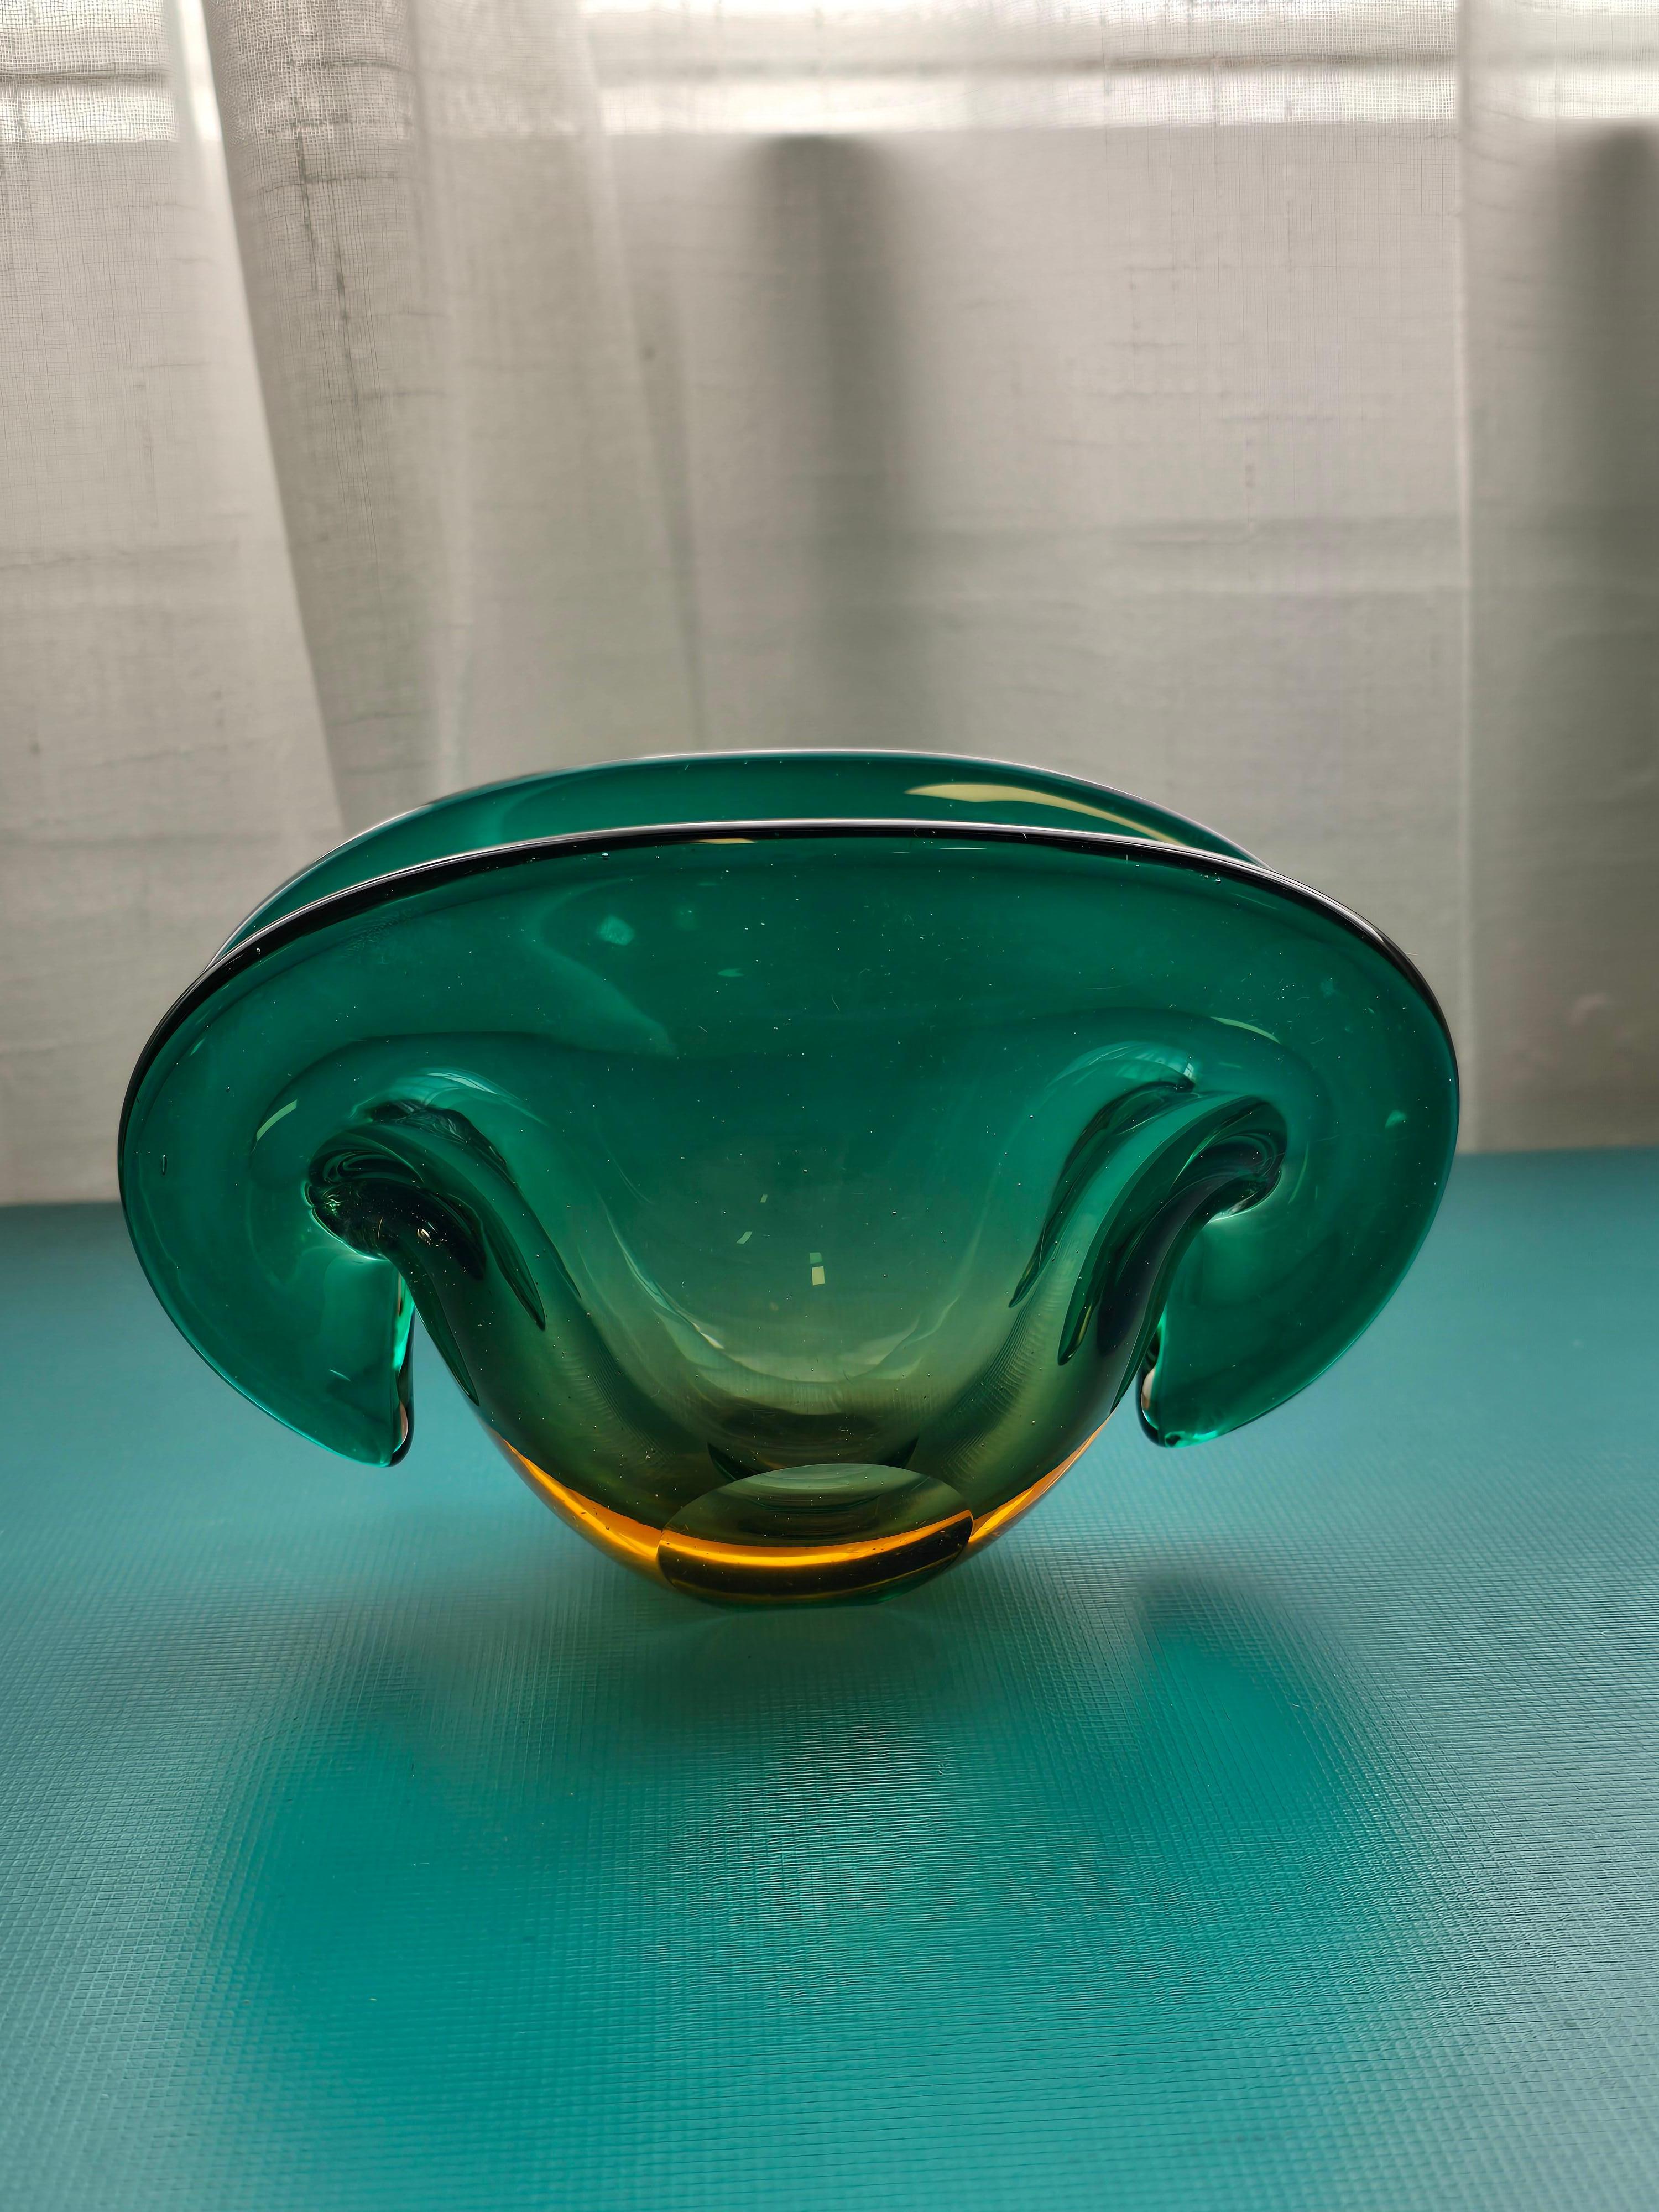 Bol décoratif Archimede Seguso en verre d'art bleu vert transparent fabriqué à Murano. Ce magnifique bol décoratif rappelle la forme d'une palourde. Il a été conçu par Archimede Seguso et fabriqué dans les années 1960 à Murano, en Italie. Le verre